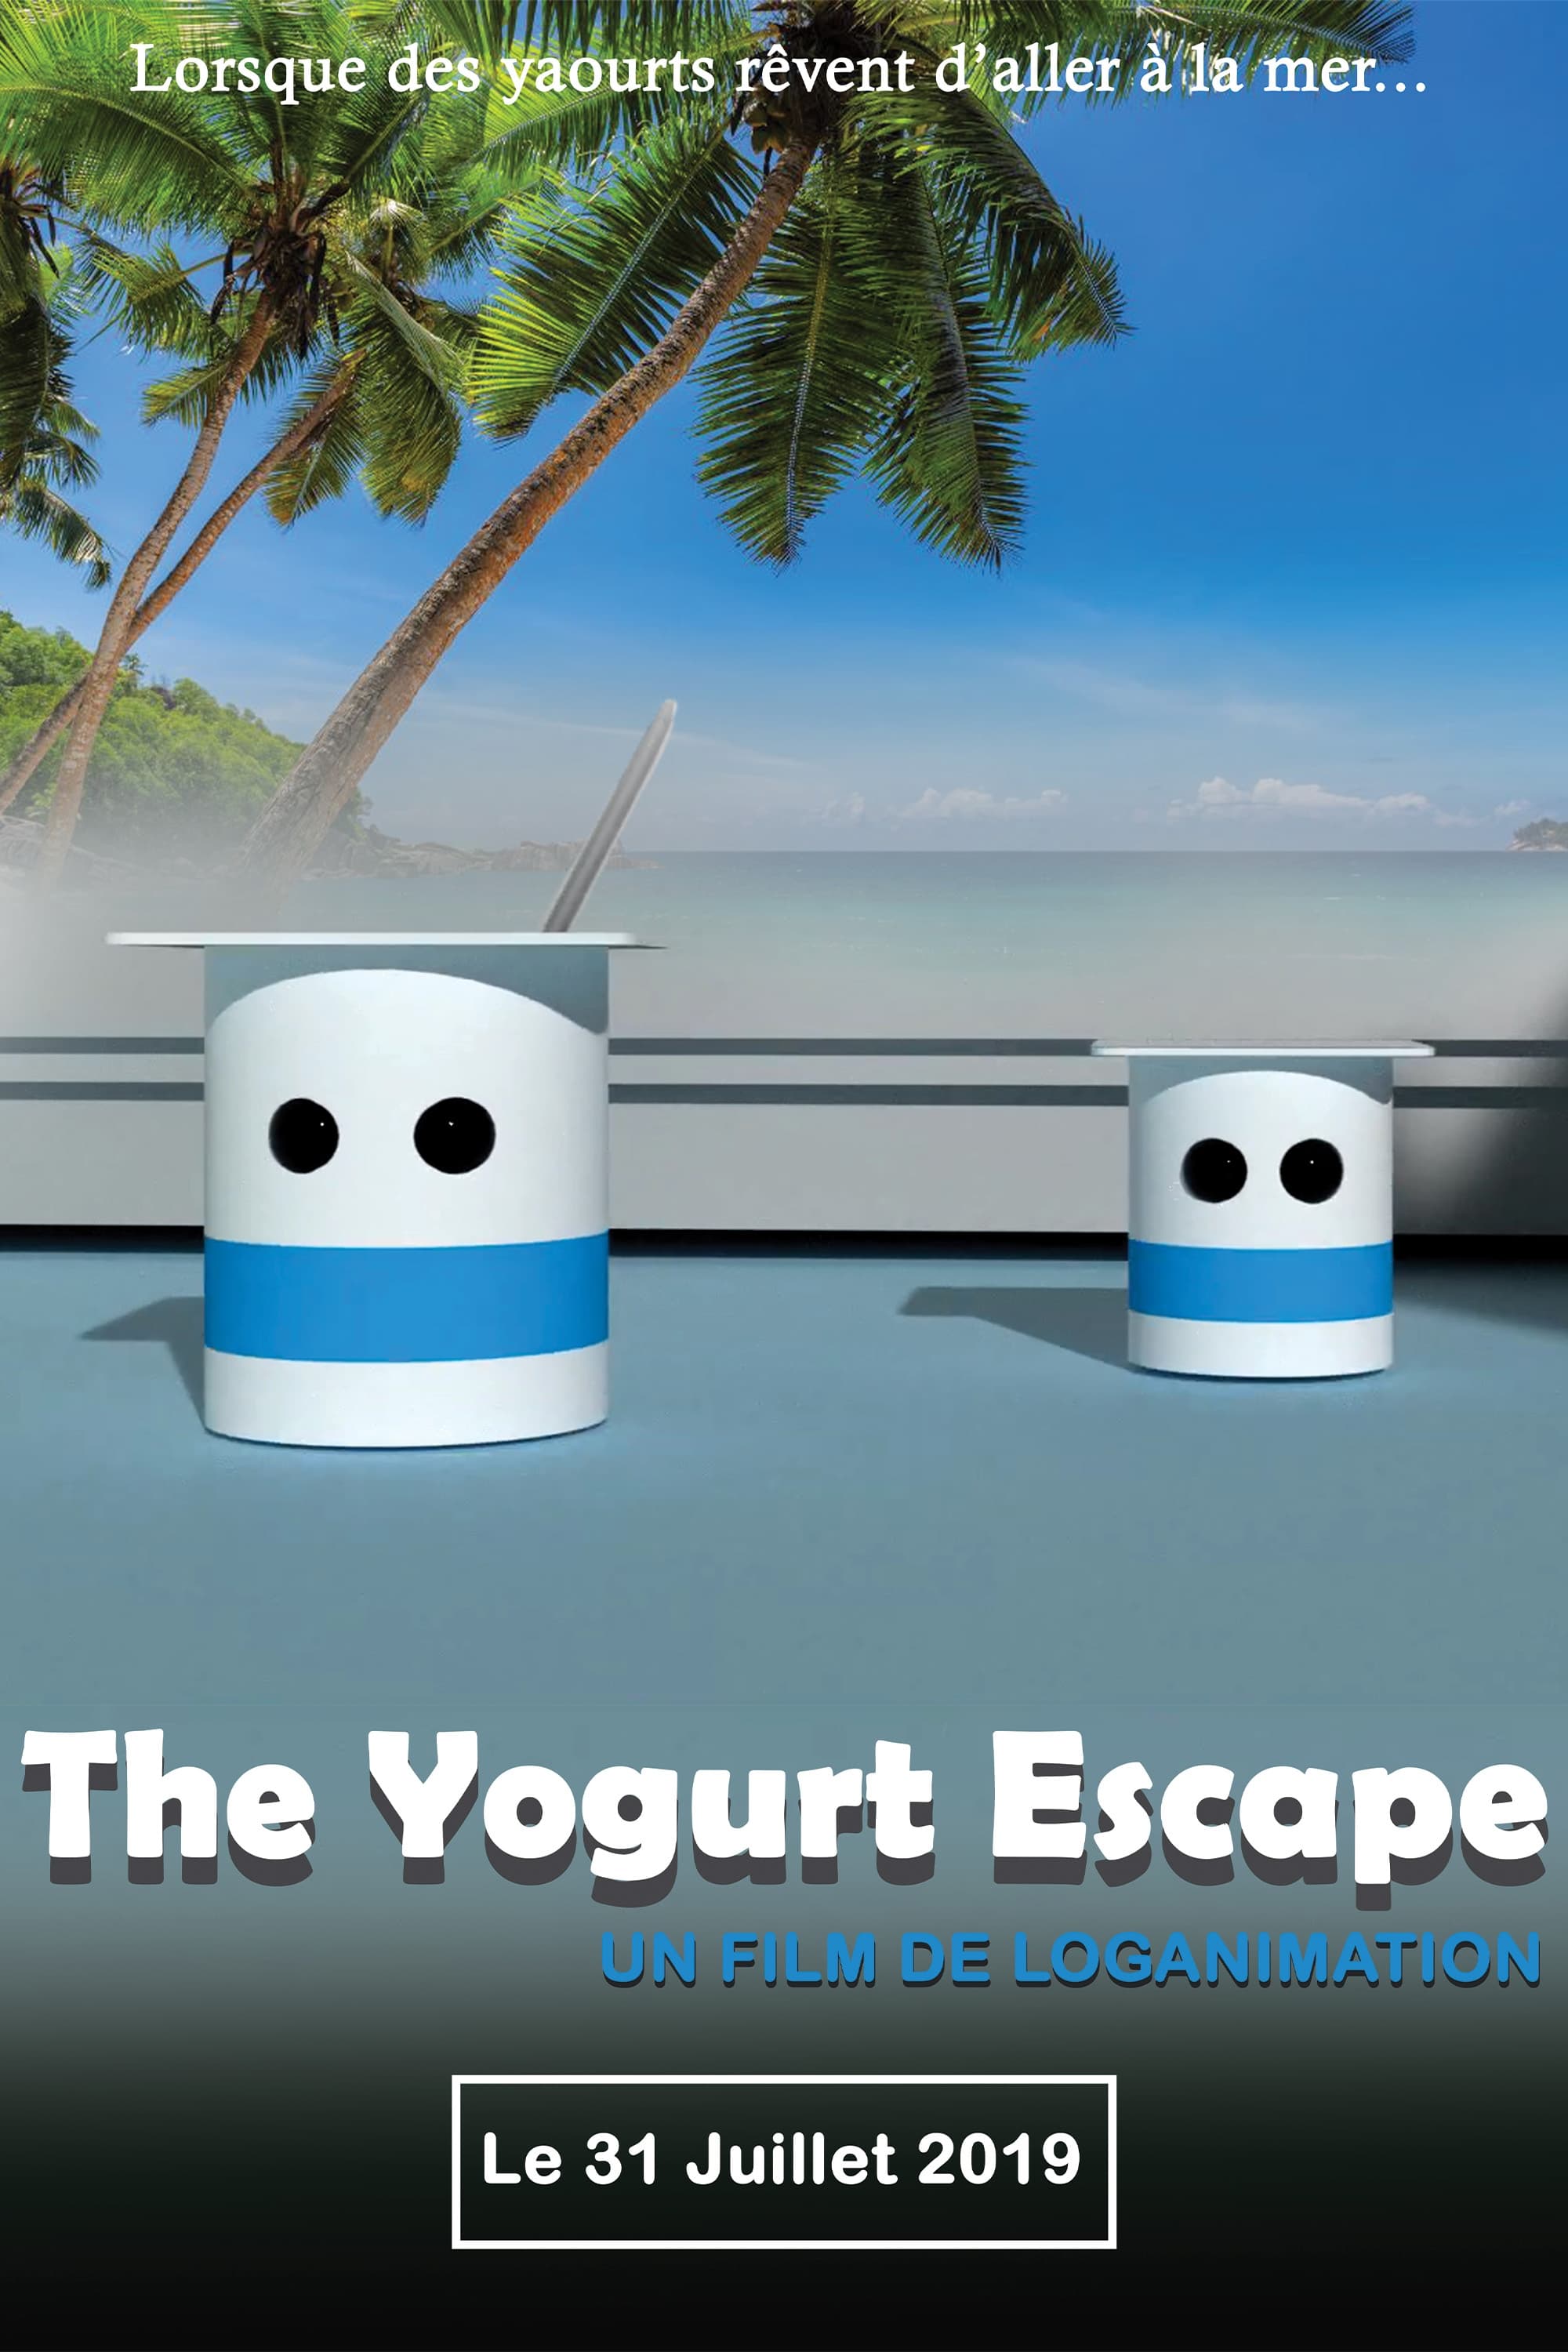 The Yogurt Escape